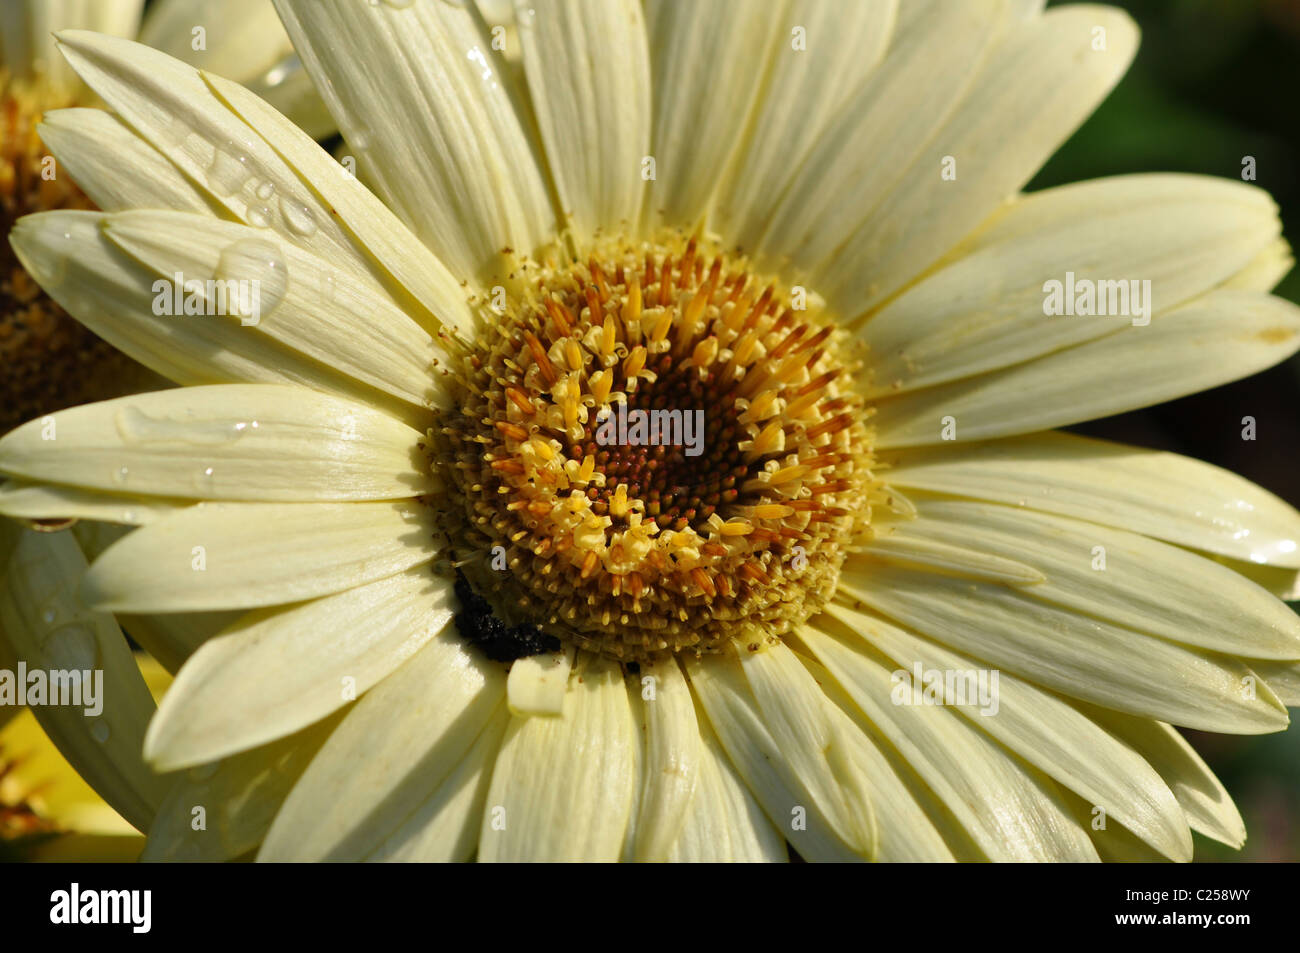 Primo piano di un unico colore giallo cremoso gerber daisy con goccioline di acqua sulla petali, Foto Stock